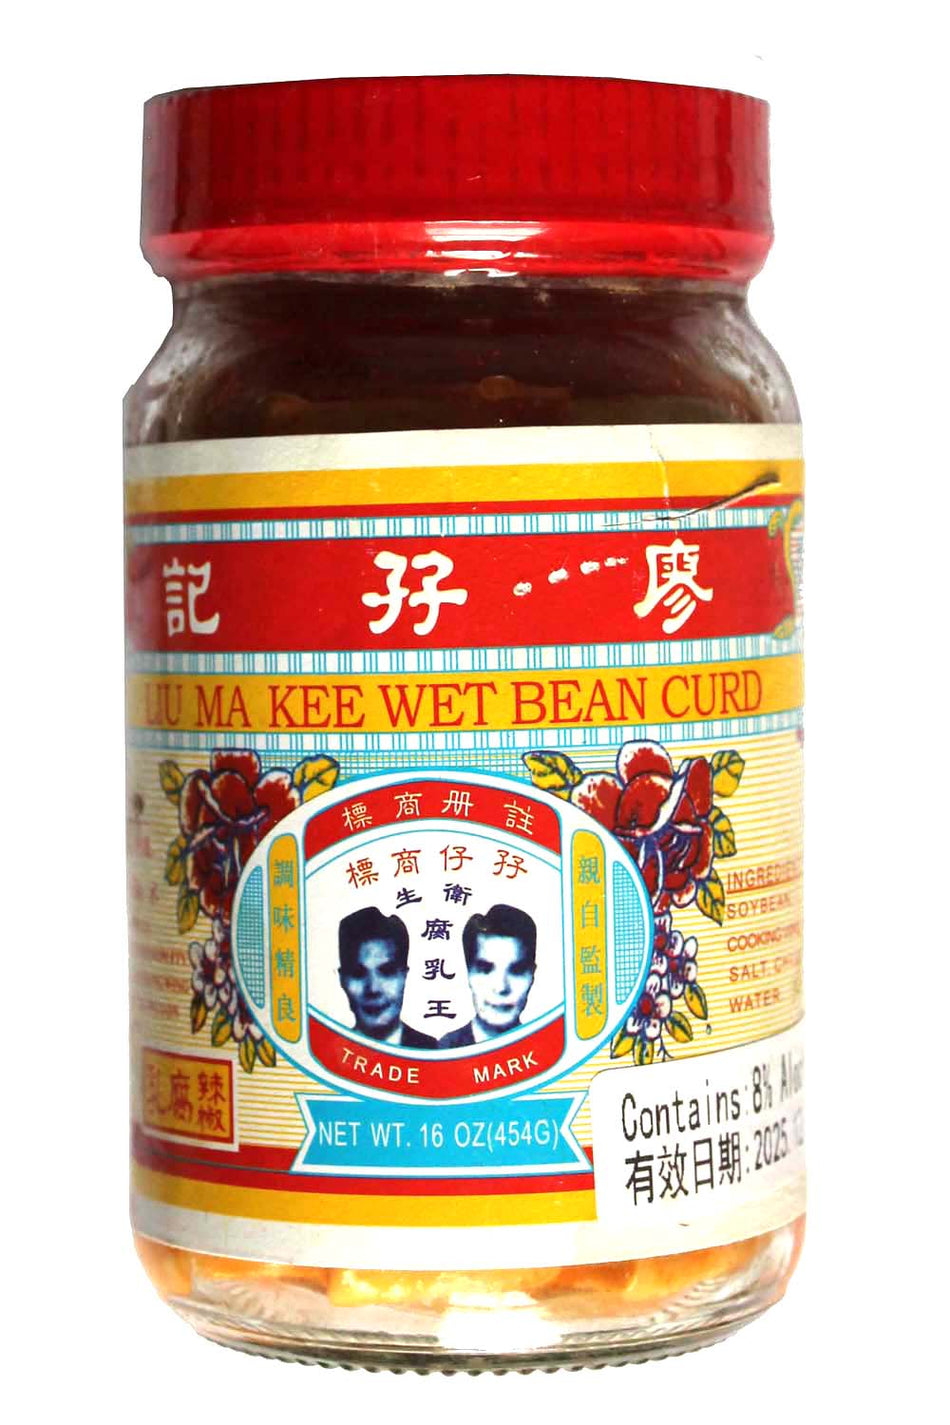 Liu Ma Kee Wet Bean Curd-None spicy